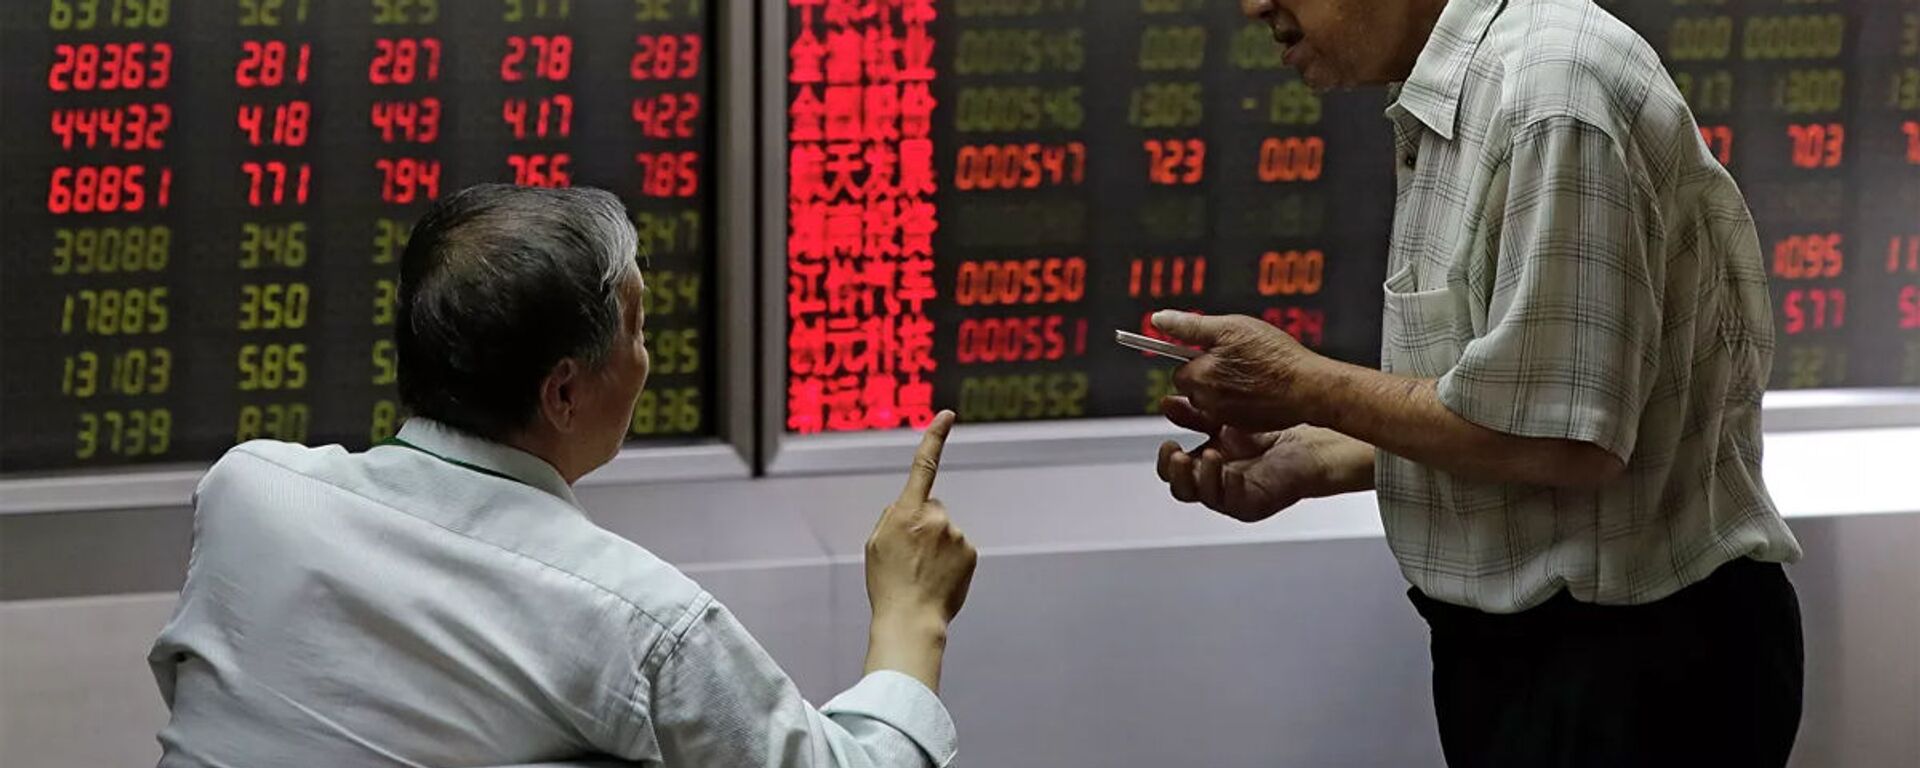 Mọi người theo dõi giá cổ phiếu tại một công ty môi giới ở Bắc Kinh - Sputnik Việt Nam, 1920, 22.12.2020